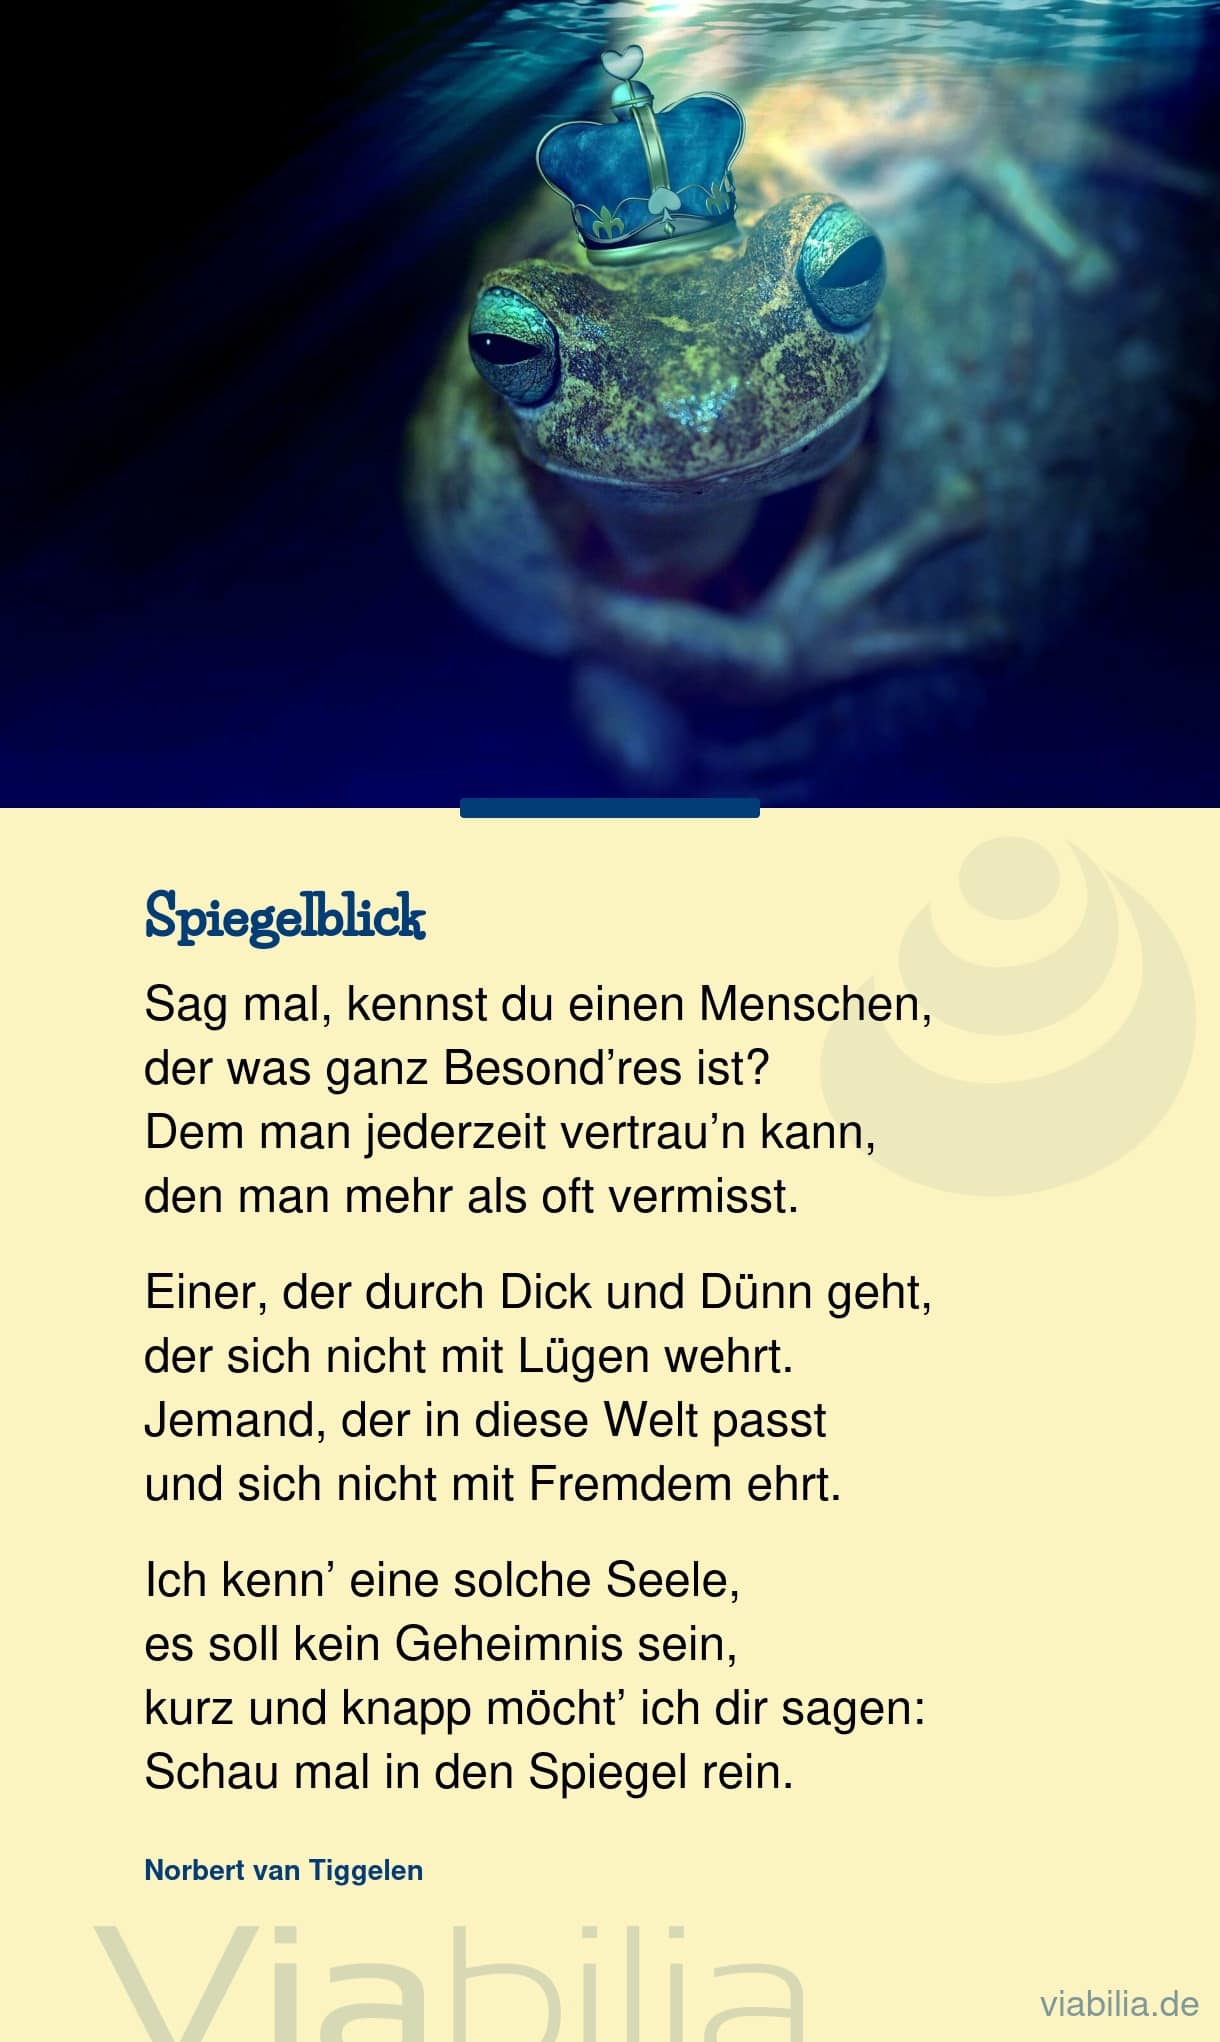 Gedicht von Norbert van Tiggelen: Spiegelblick